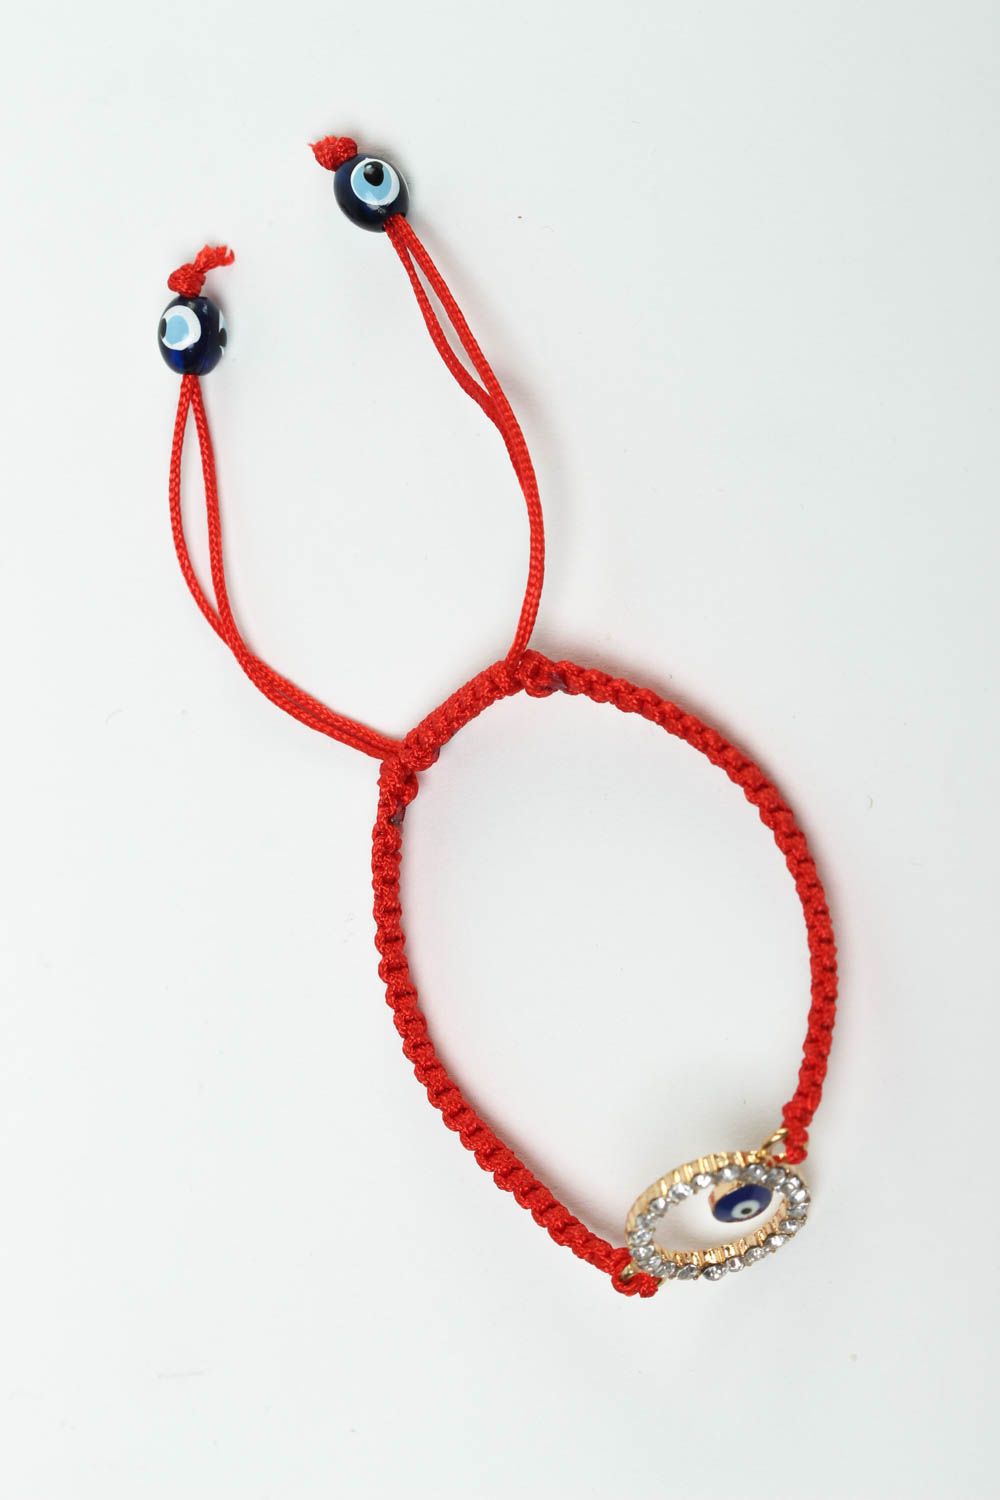 Модный браслет ручной работы красивый браслет из ниток плетеный браслет фото 2